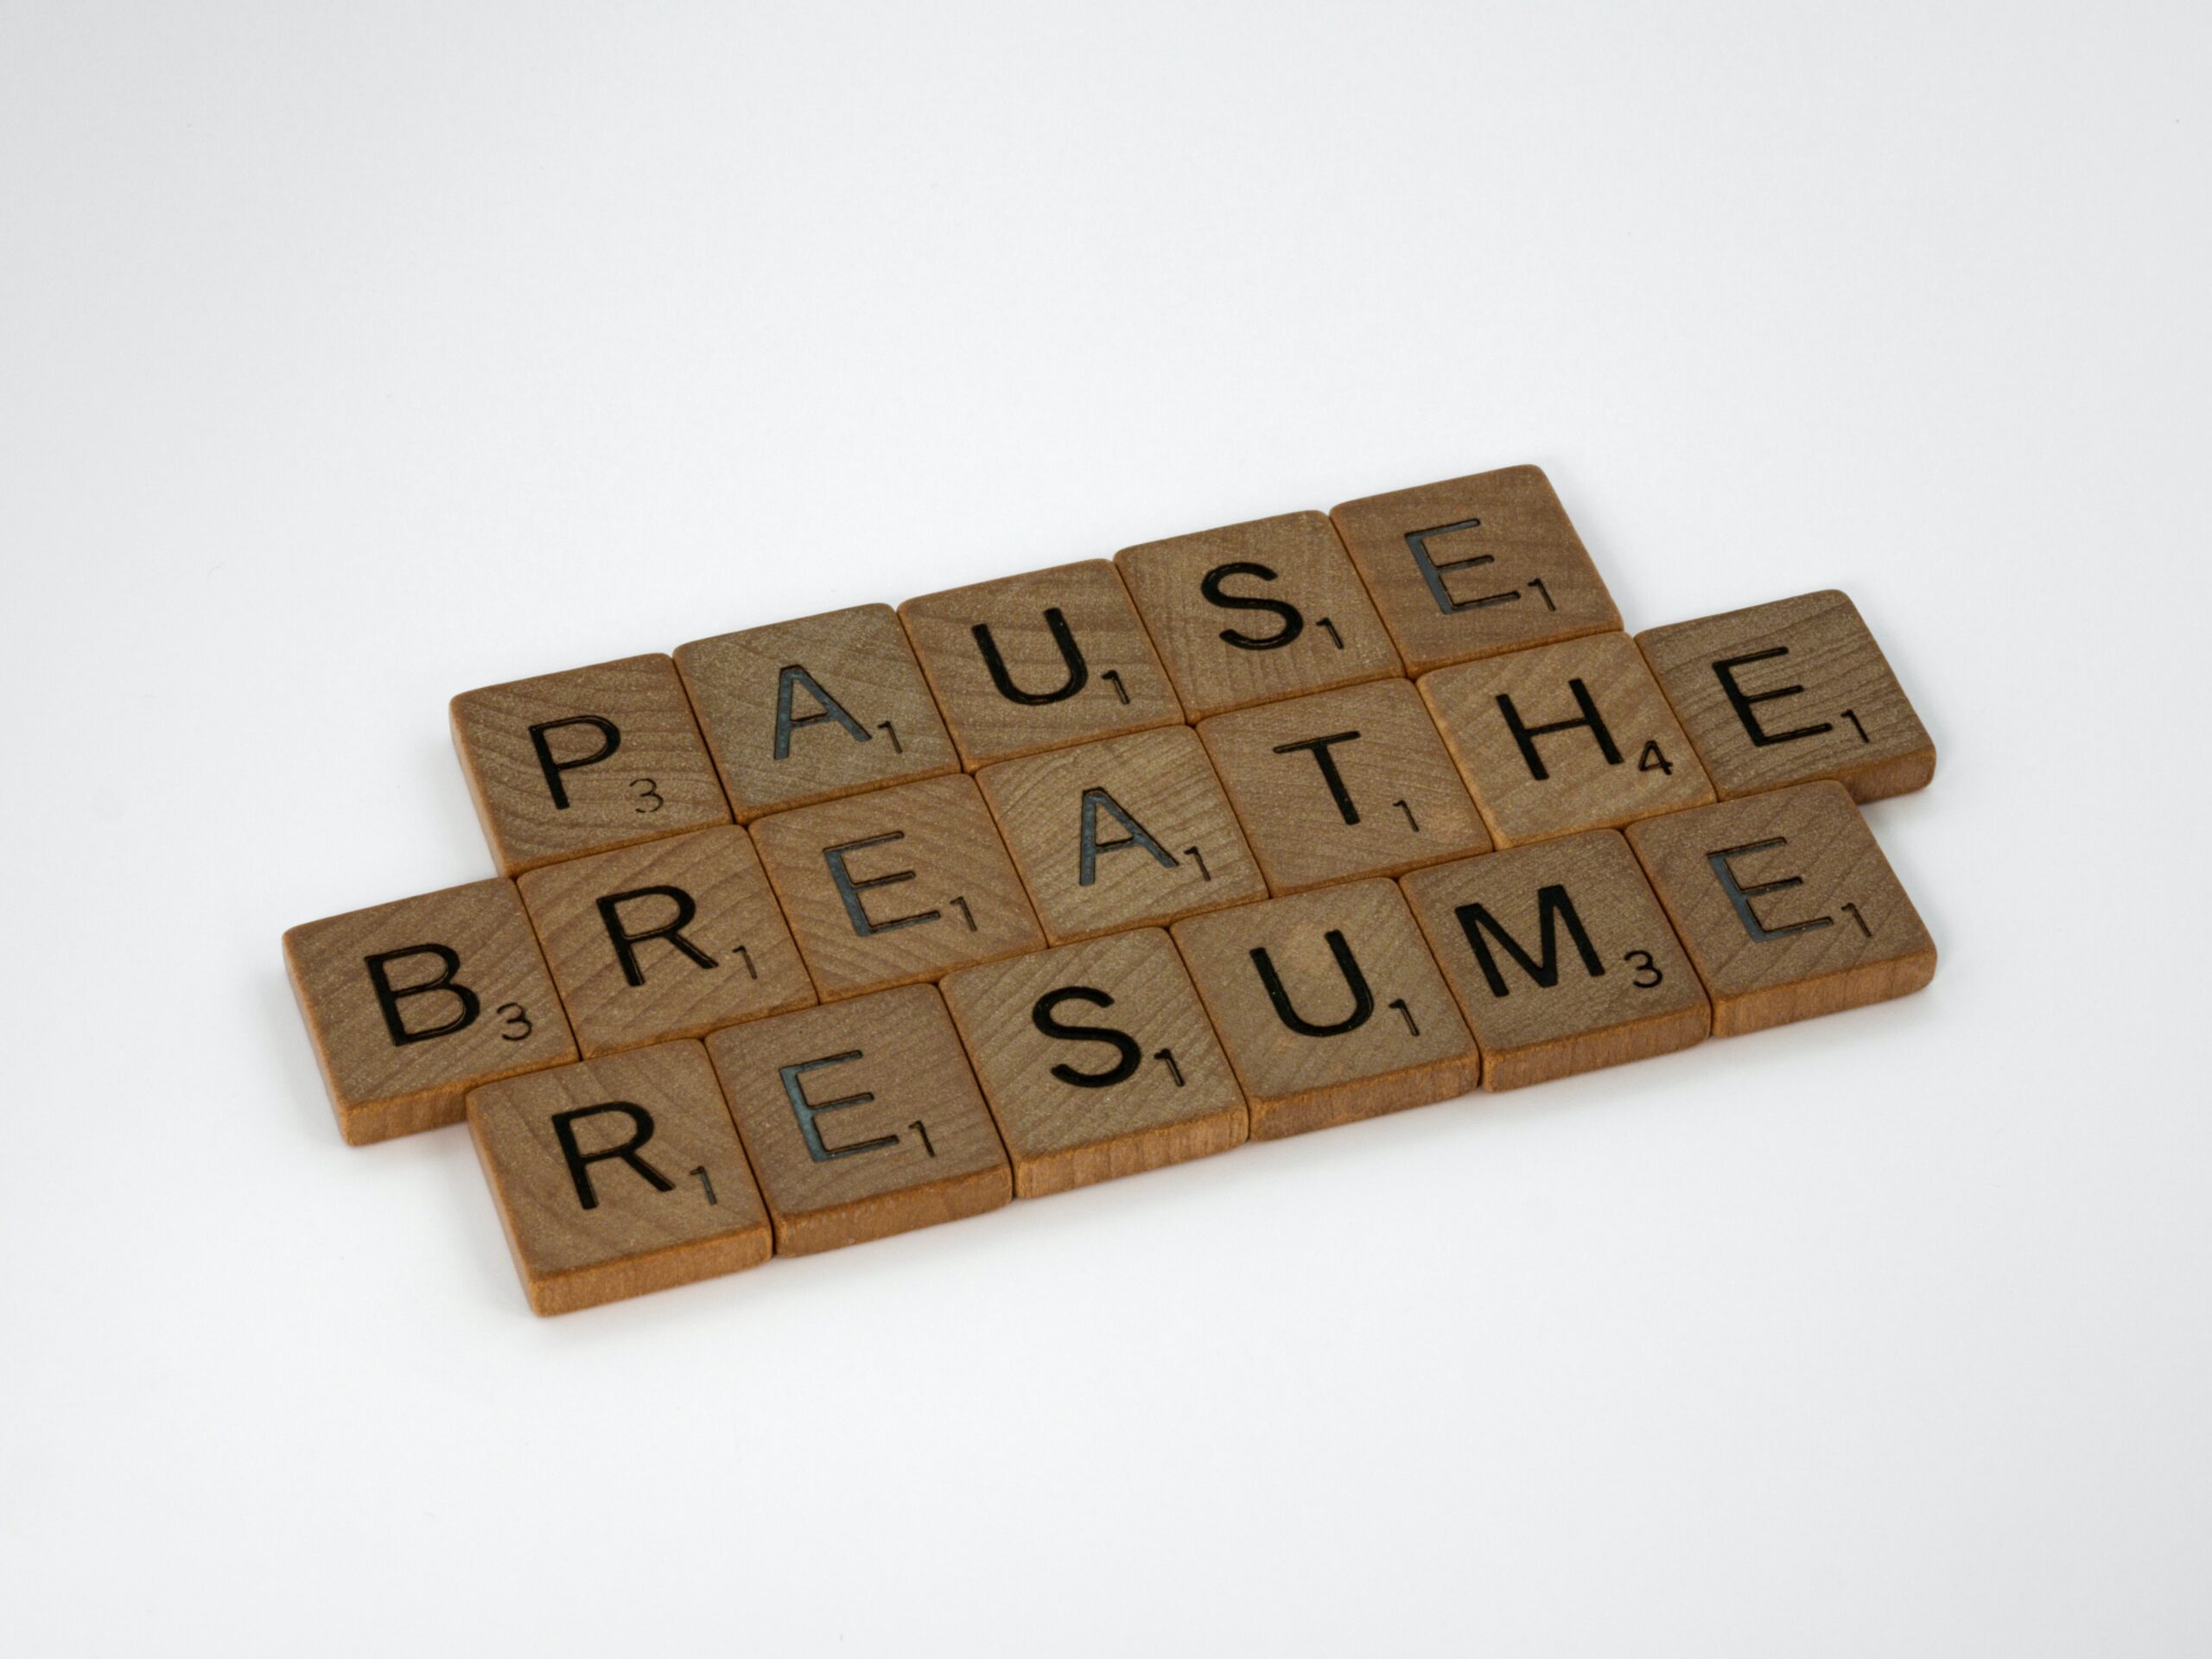 Weiße Fläche, auf der mehrere Holzsteinchen mit Buchstaben darauf liegen. Die Buchstaben ergeben die Worte "Pause", "Breathe" und "Resume".